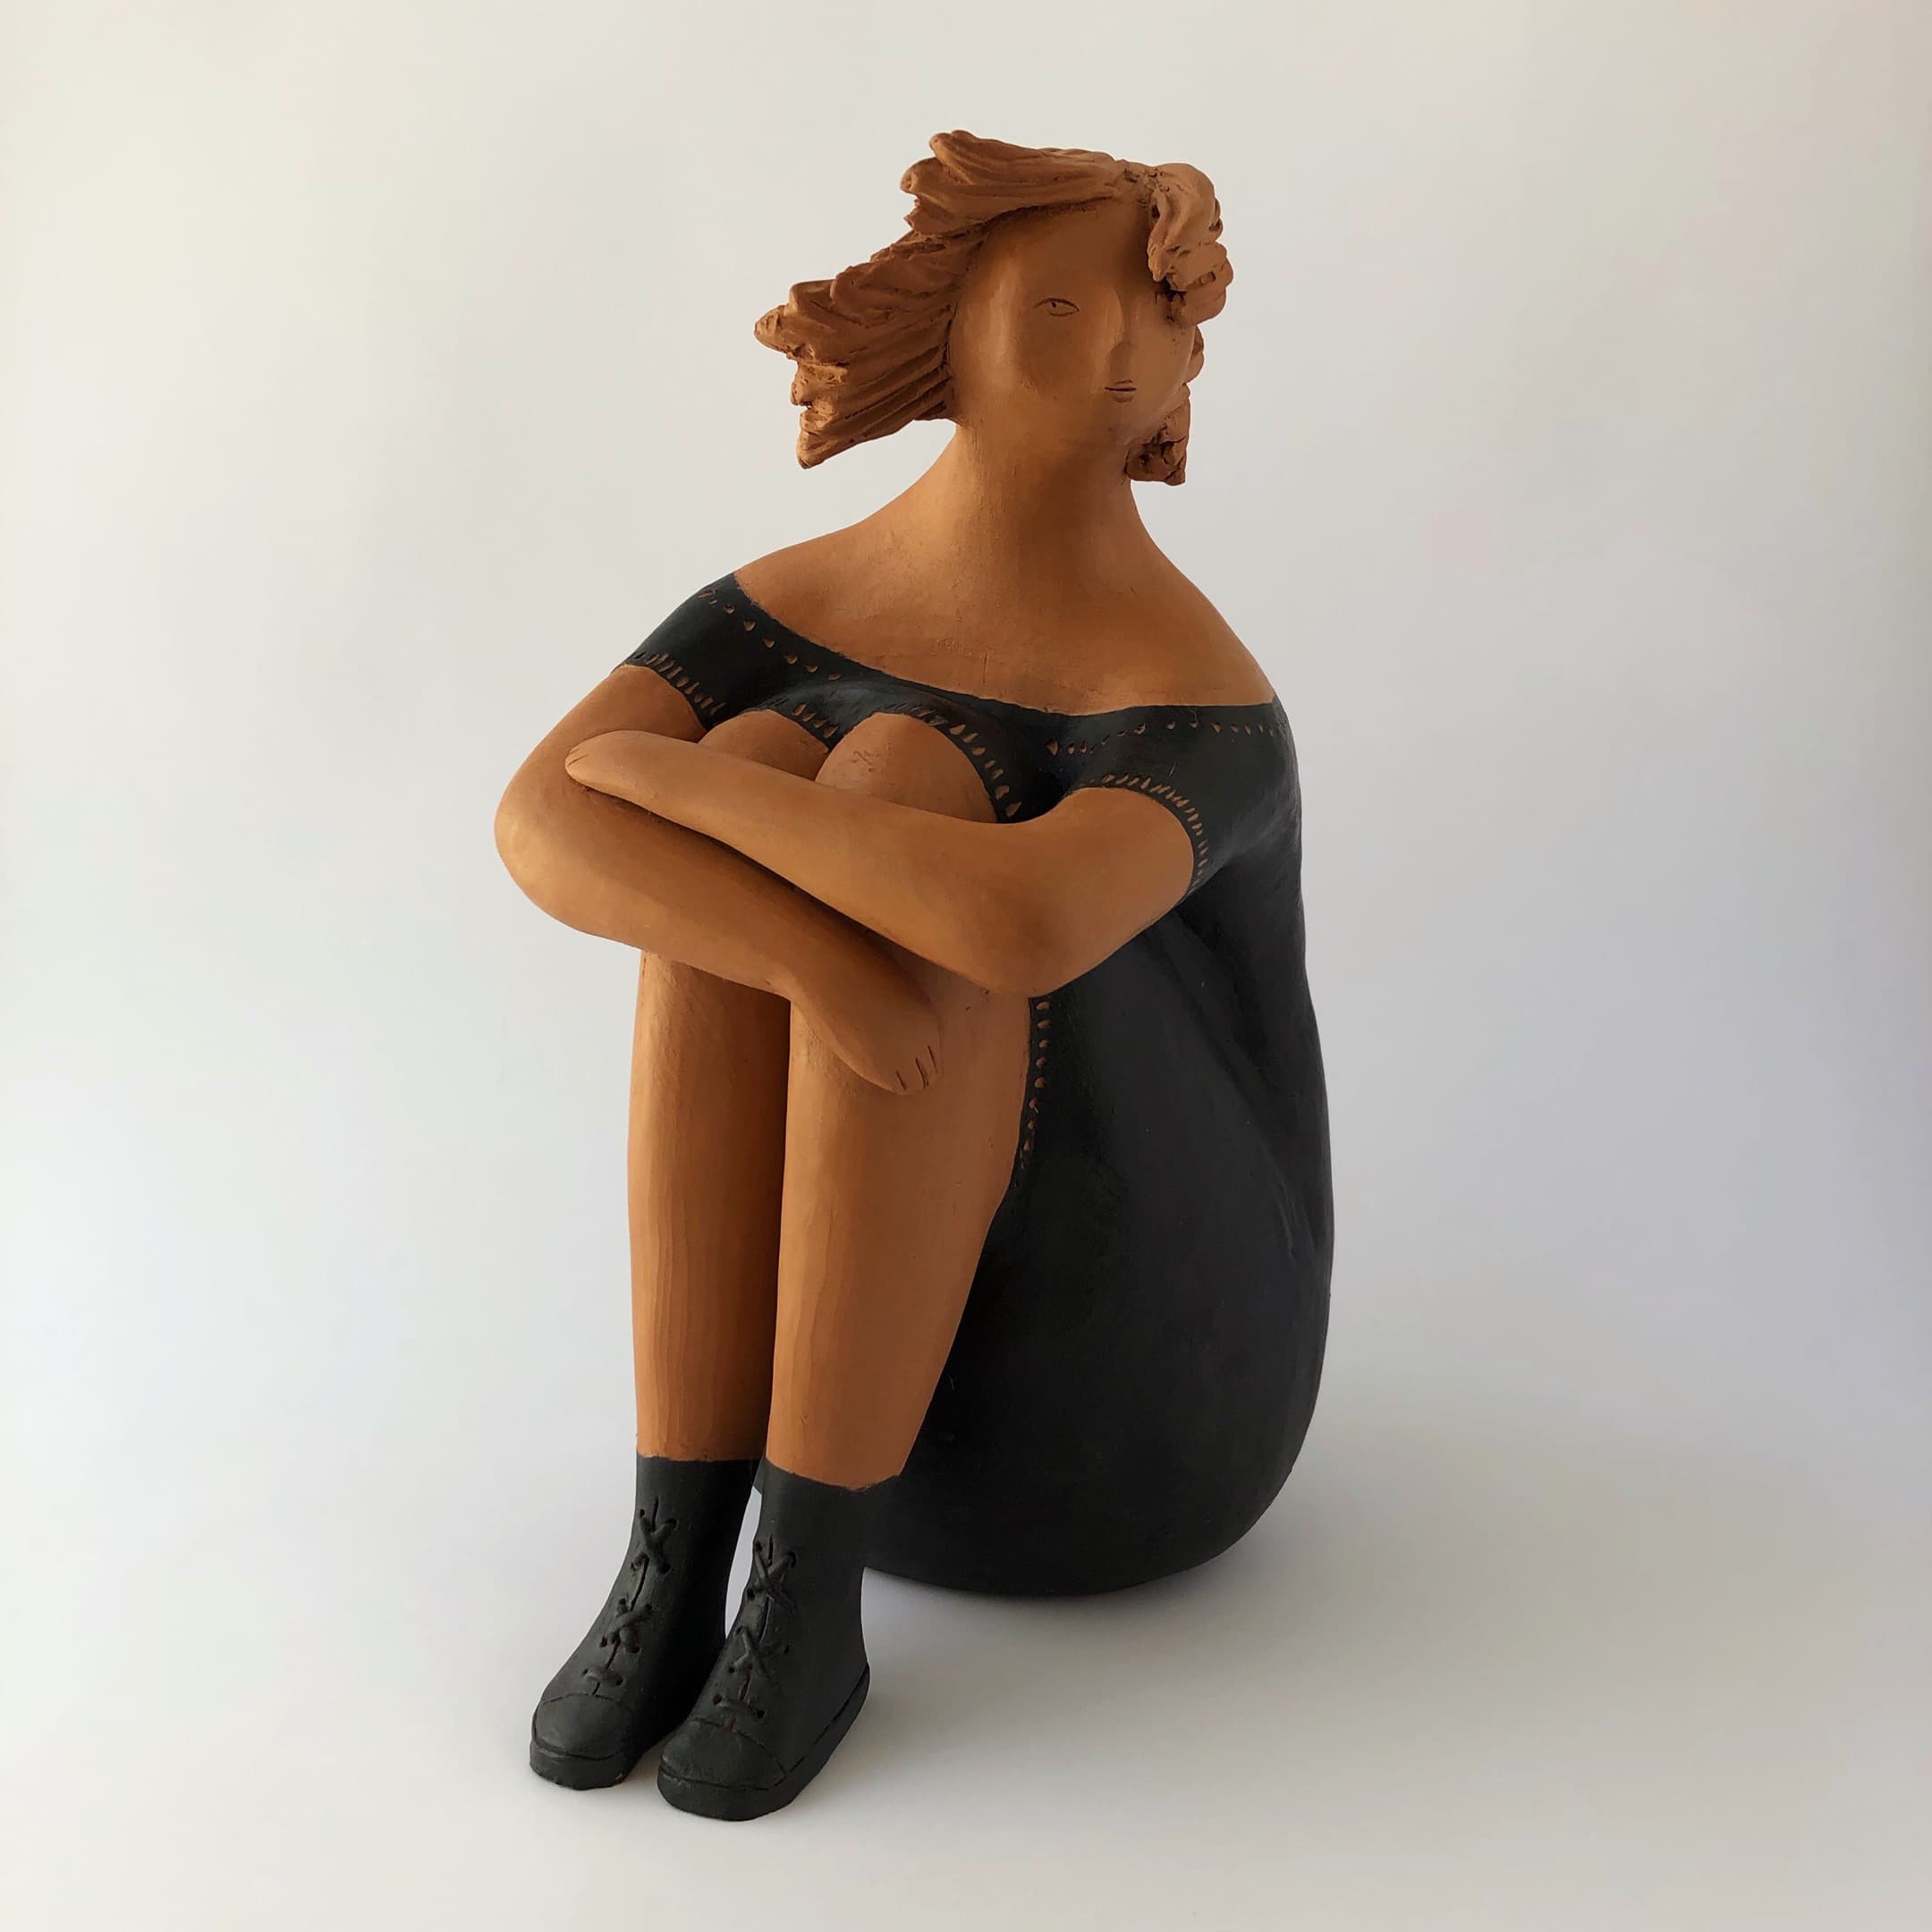 Donna con stivaletti in nero rappresenta una figura femminile seduta